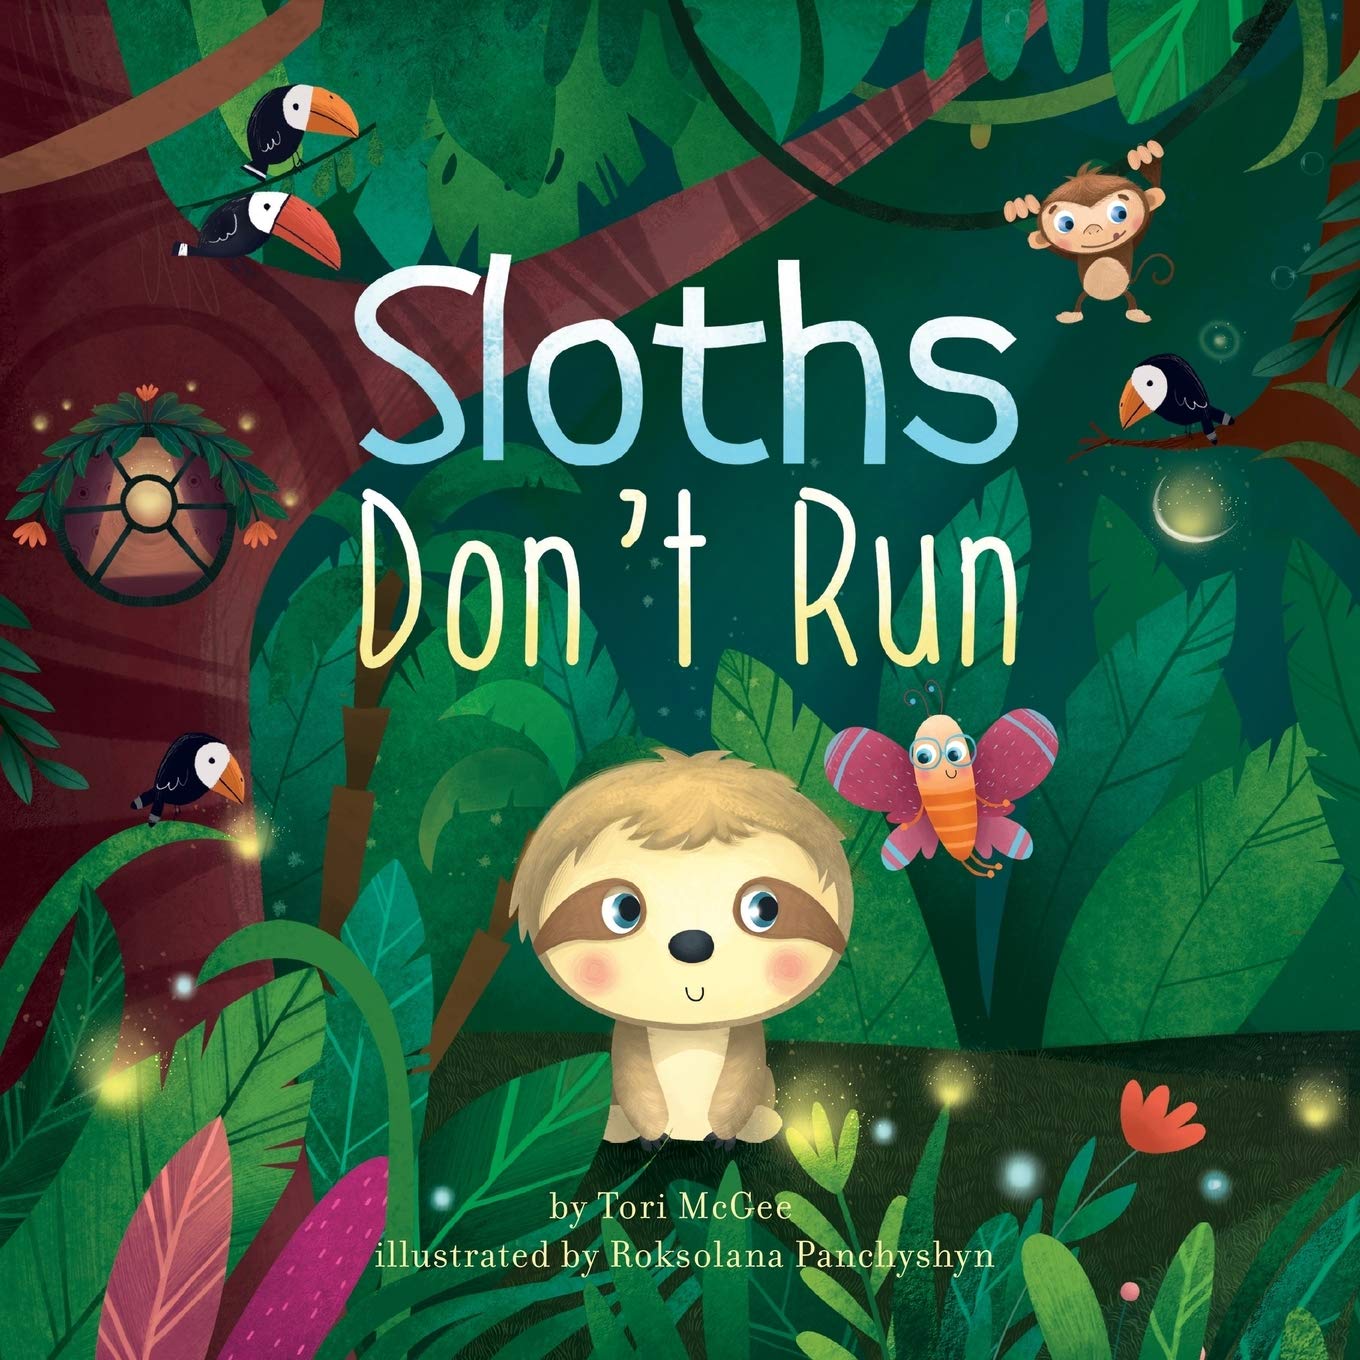  48 fantastiska böcker om regnskogen för barn